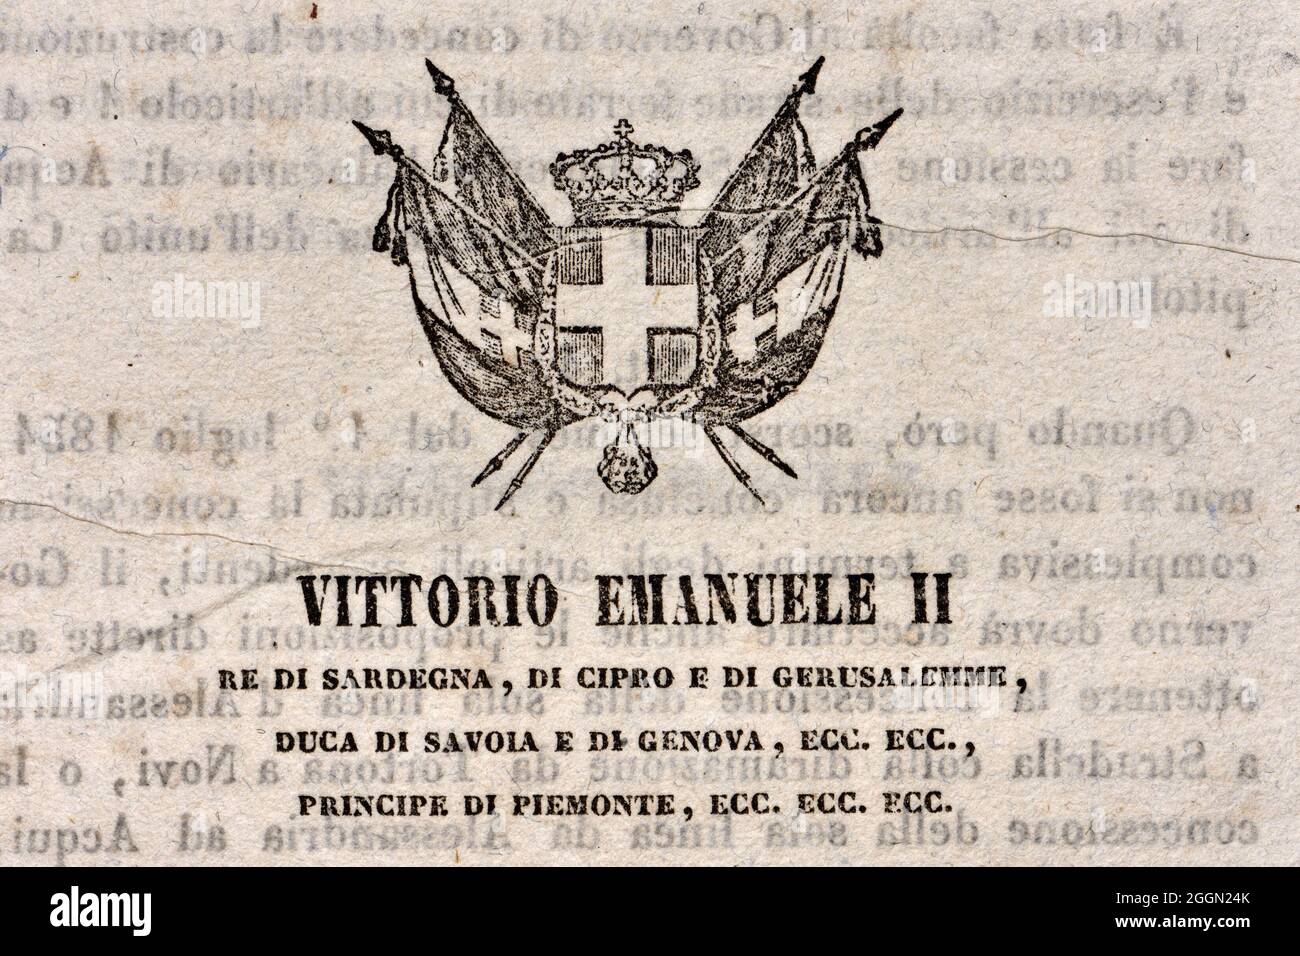 Italienisches Dokument von König Viktor Emmanuel II., in dem neue Gesetze vom Senat und der Abgeordnetenkammer verkündet werden. Detail der Titelseite Stockfoto